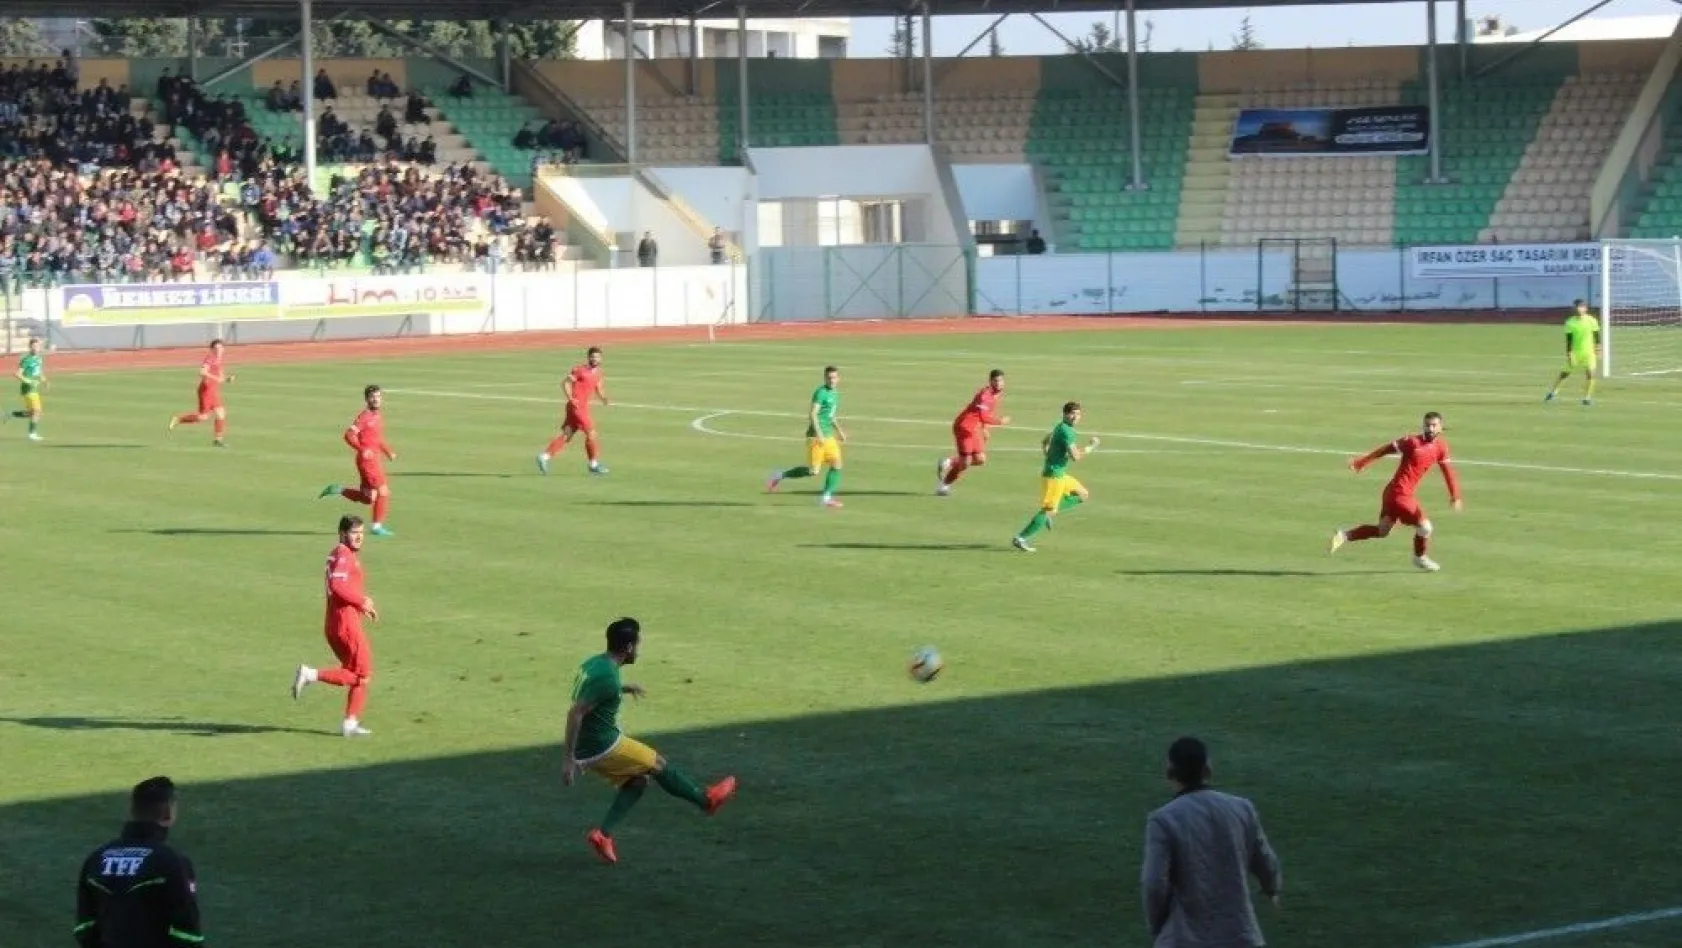 Adıyaman 1954Spor: 4- 0: Malatya İnönü Üniversitesispor
